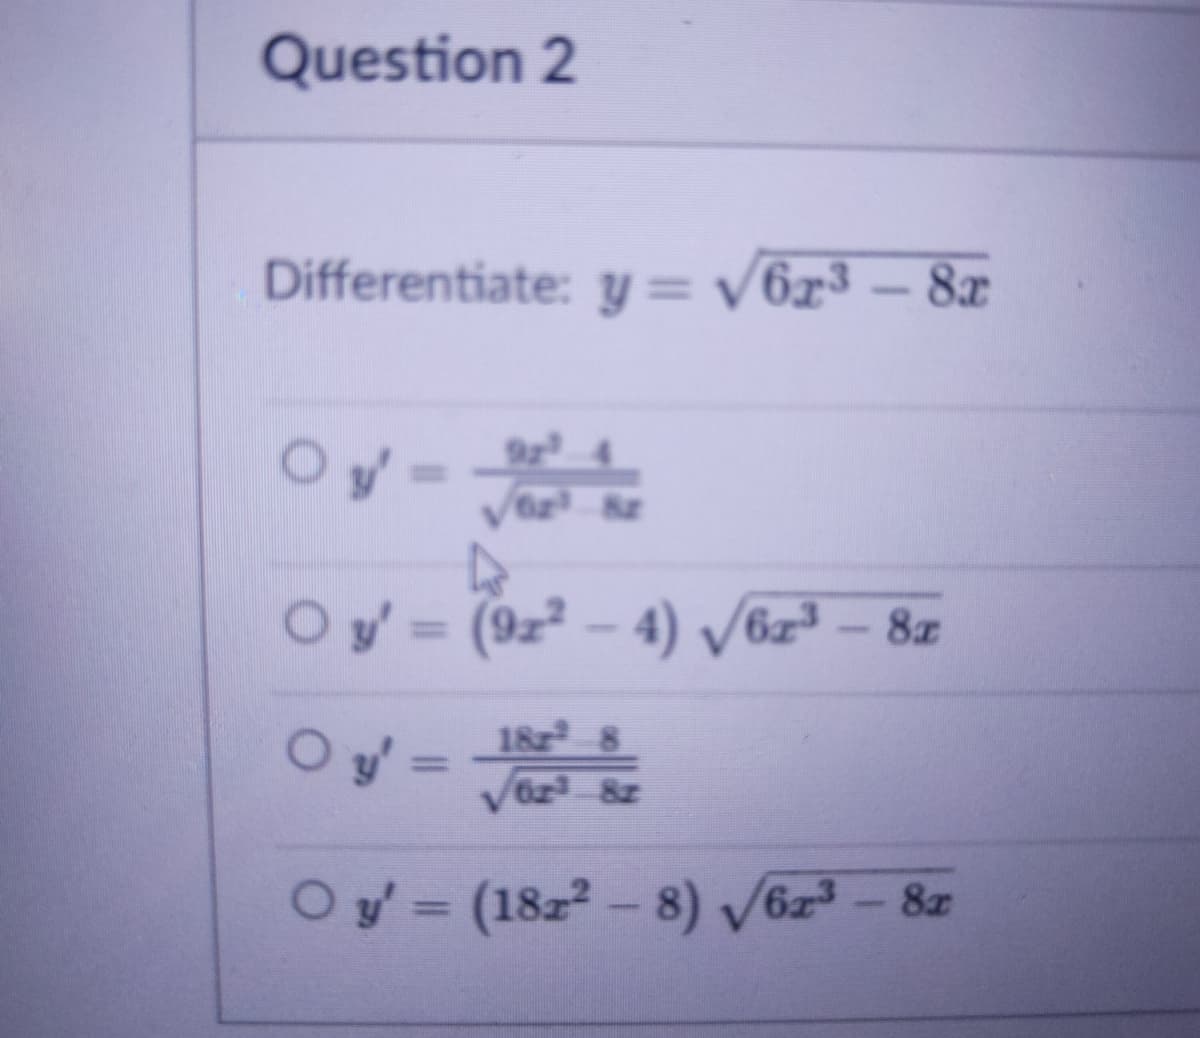 Question 2
Differentiate: y = v6x³ – 8x
Oy-
O y'= (9z² – 4) V6z³ - 8z
%3D
182 8
O y =
Oy'= I
%3D
Oy= (18z2- 8) V6z - 8z
%3D
